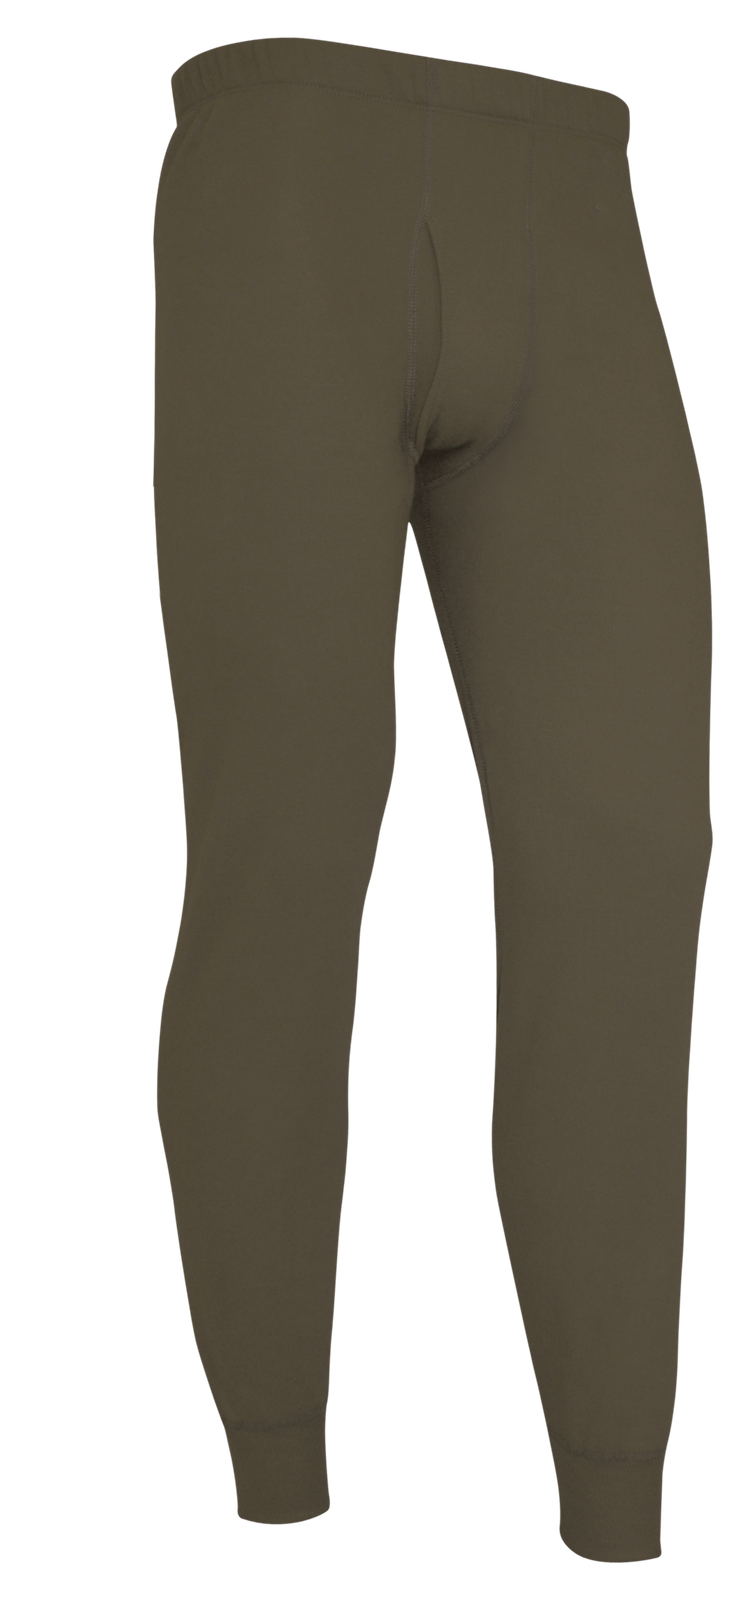 Men's Fire Resistant Base Layer Pants